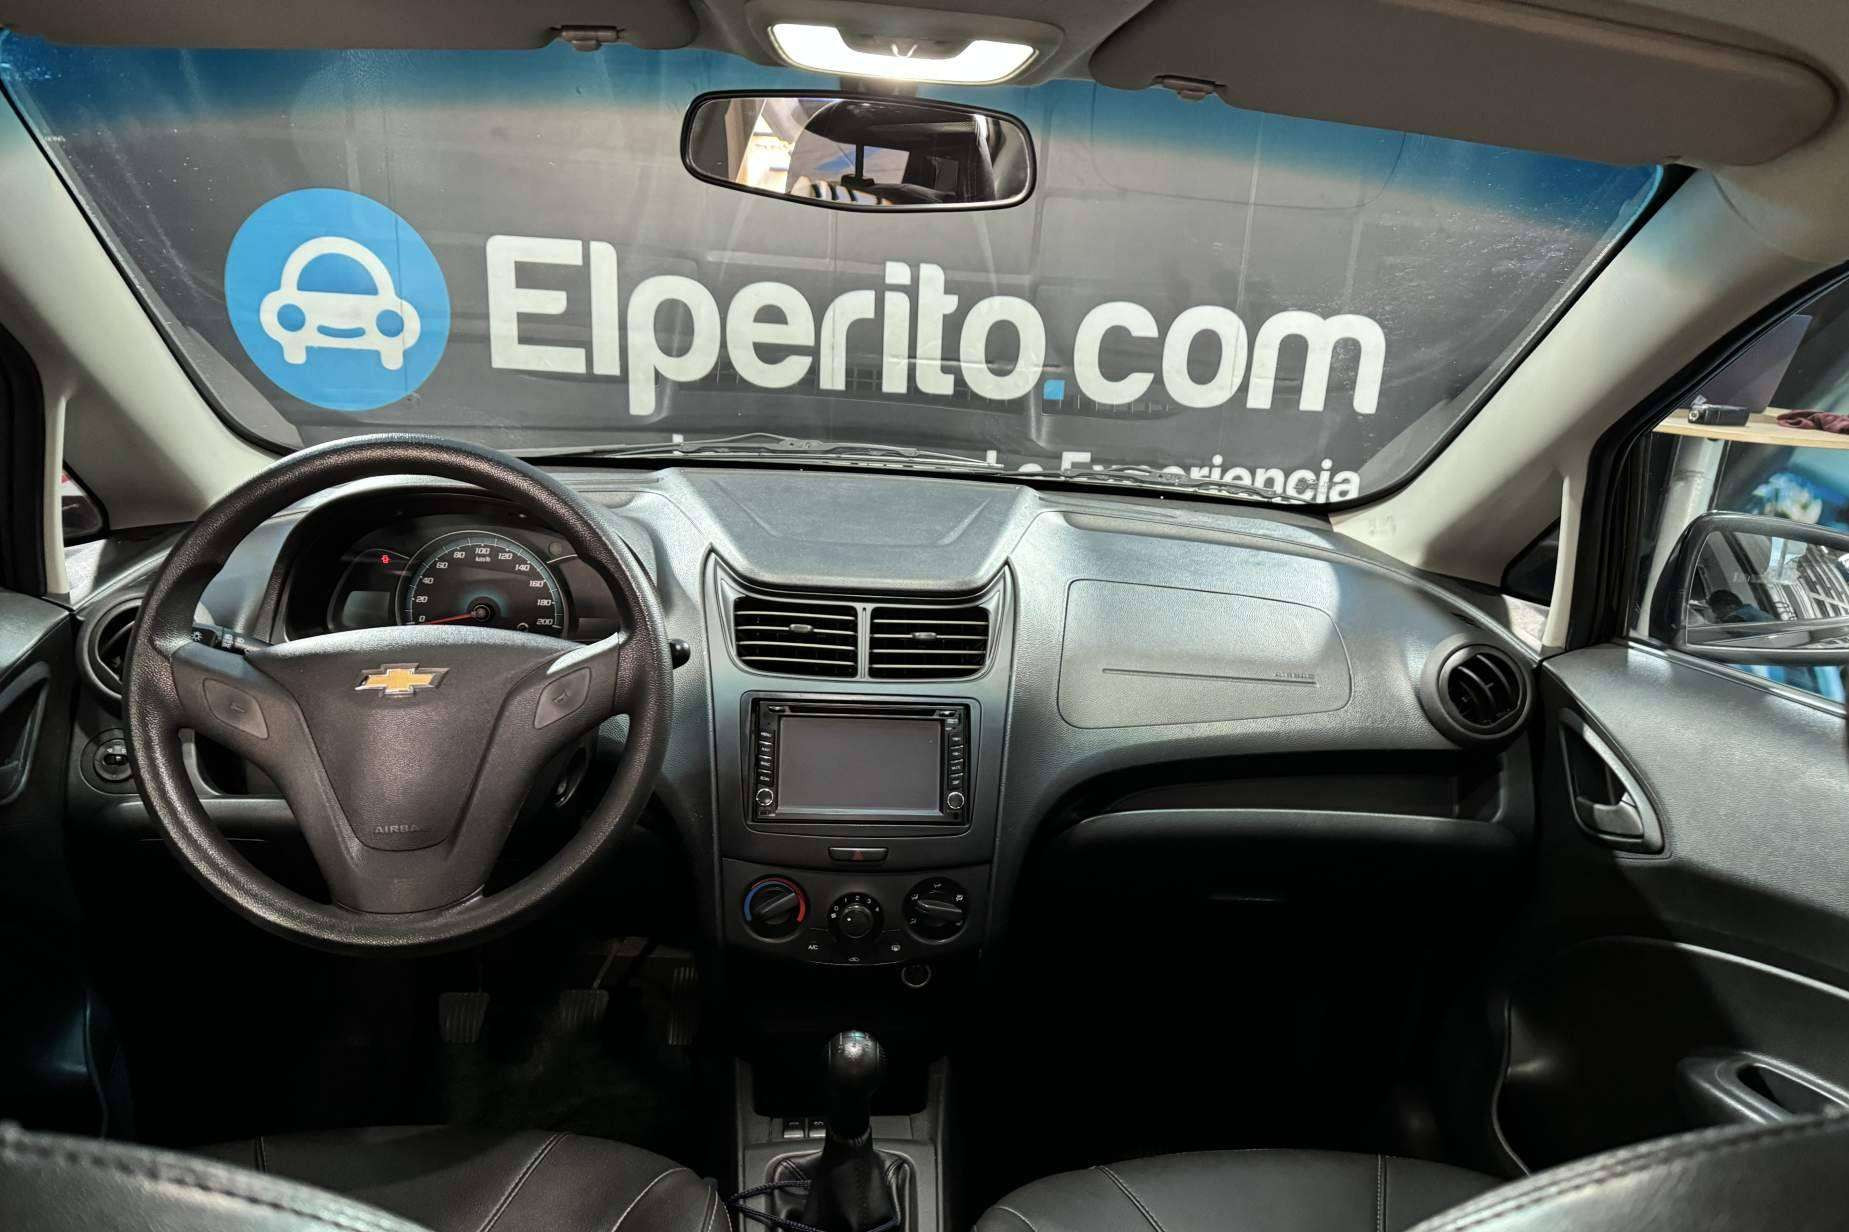  ElPerito.com ofrece un servicio de peritaje para establecer el valor de todo tipo de vehículos 